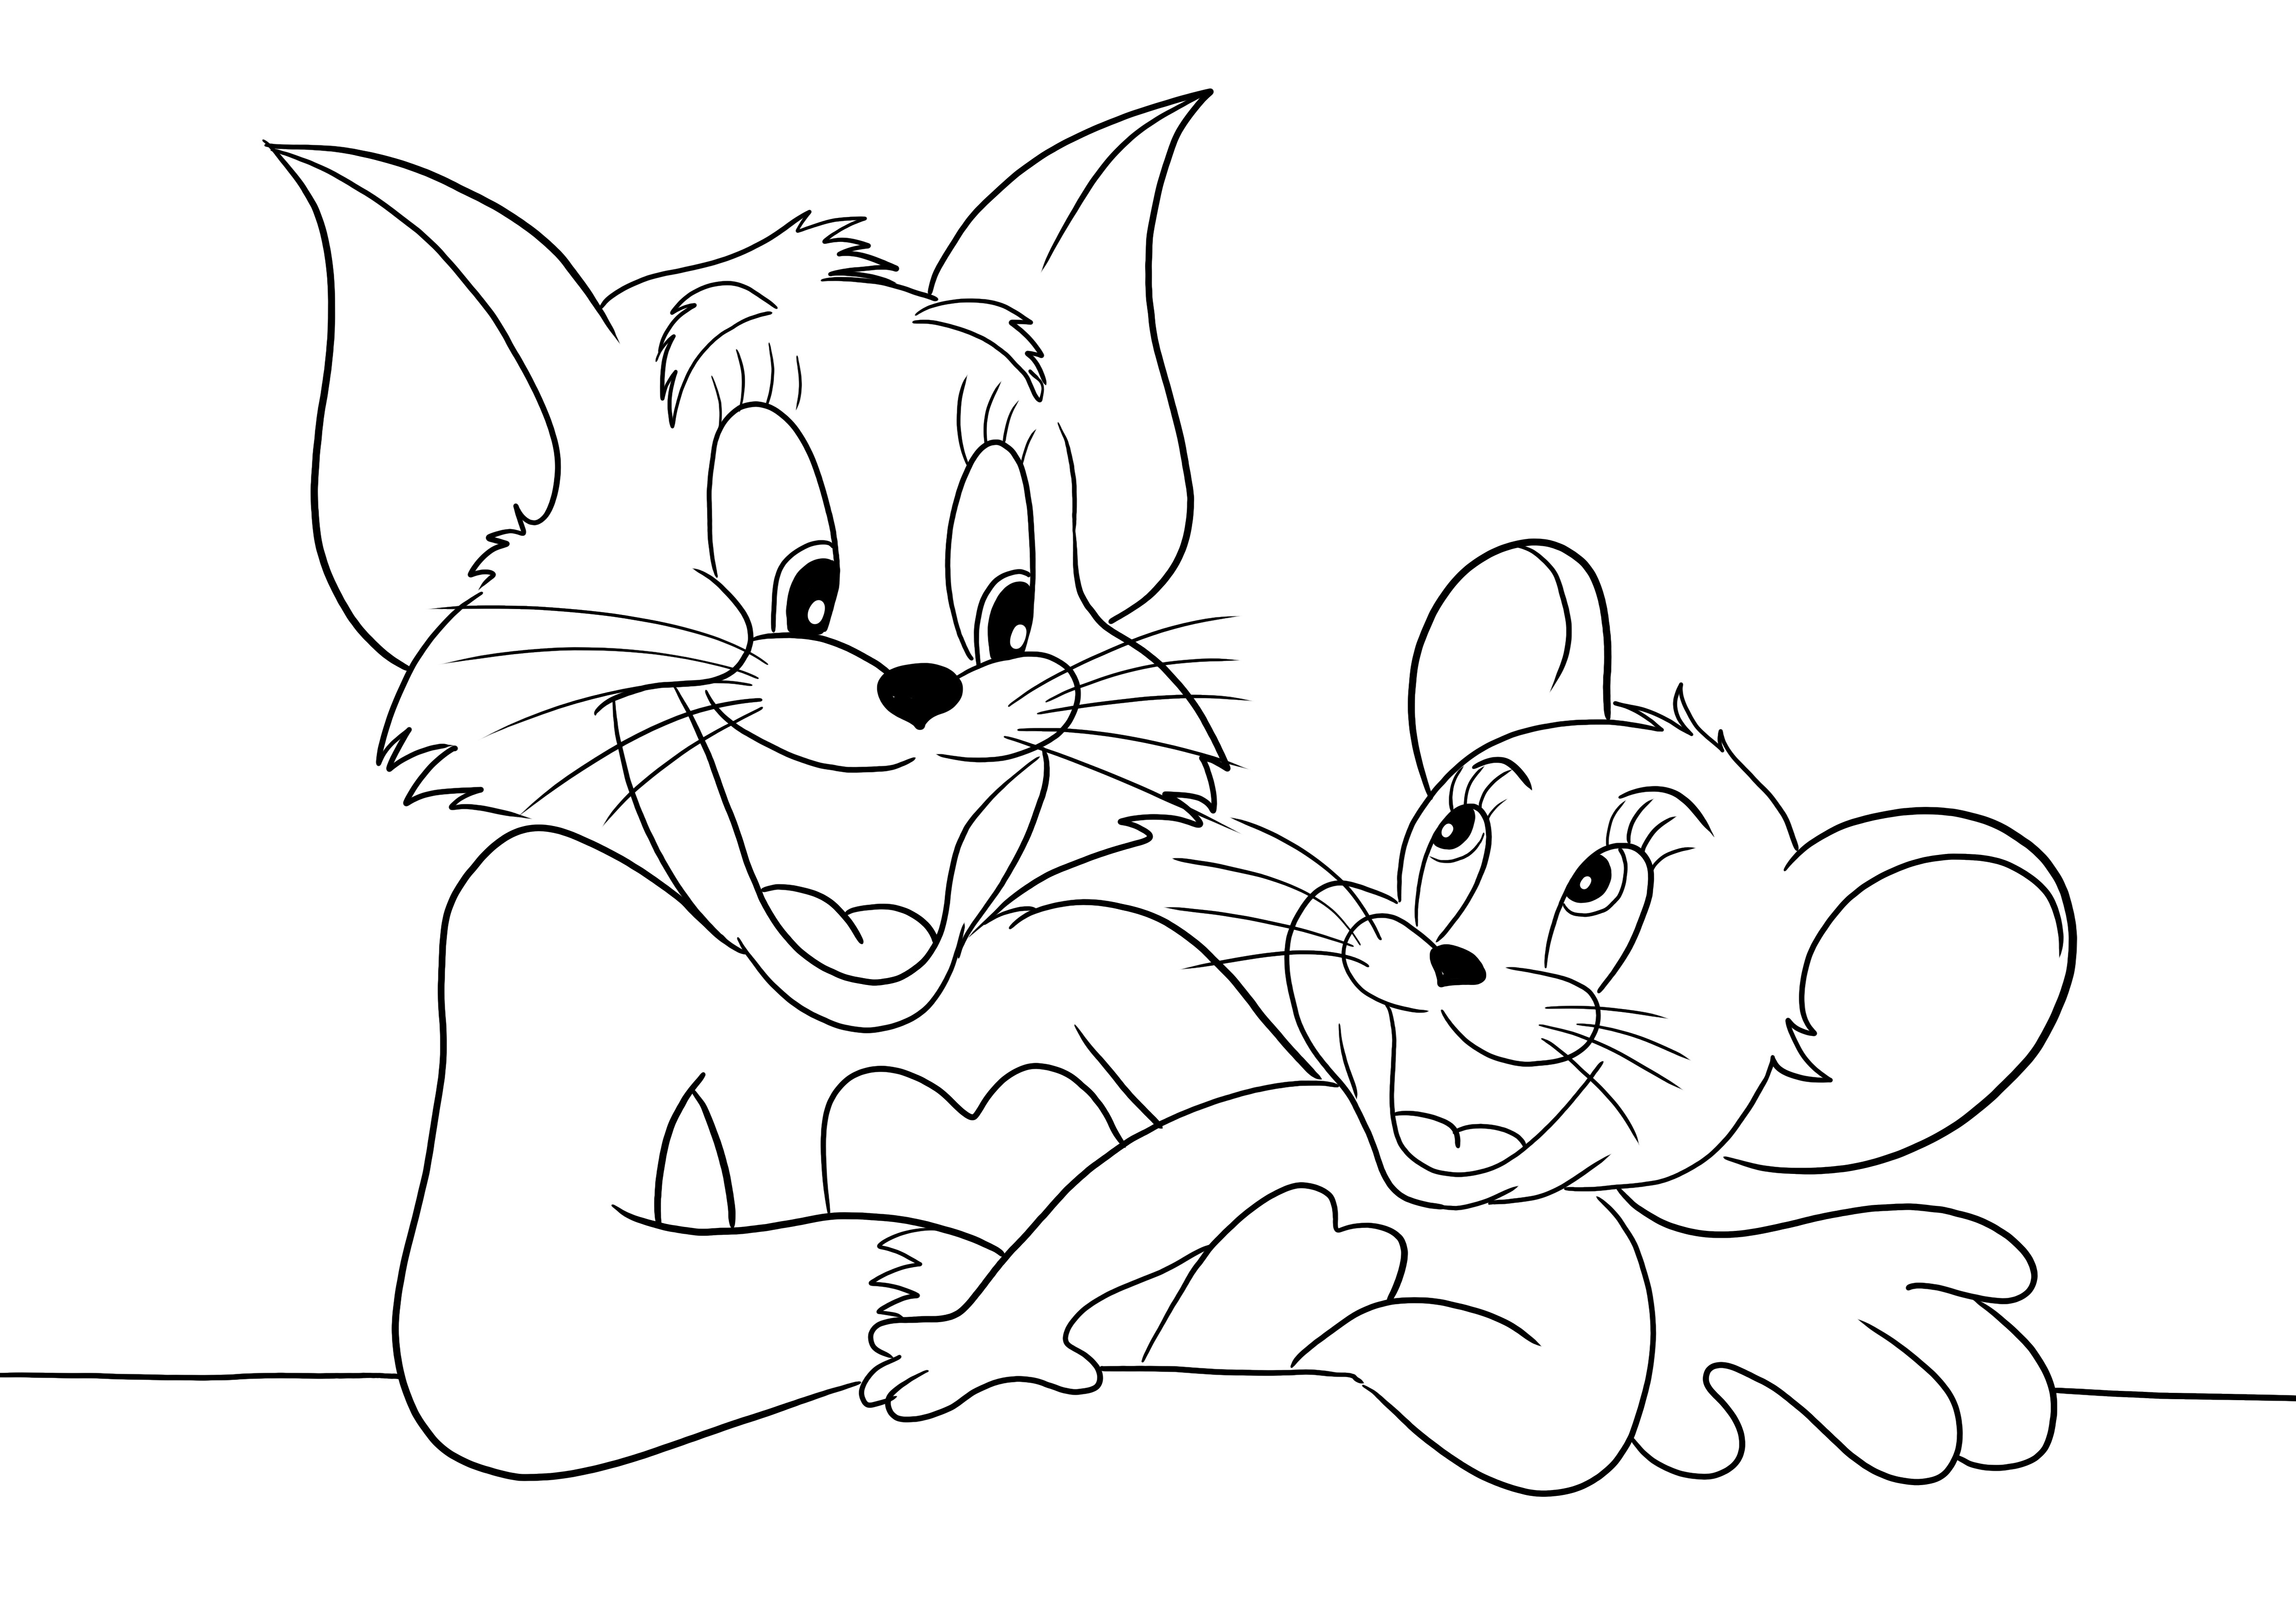 Happy Tom and Jerry siap cetak gratis untuk mewarnai untuk anak-anak